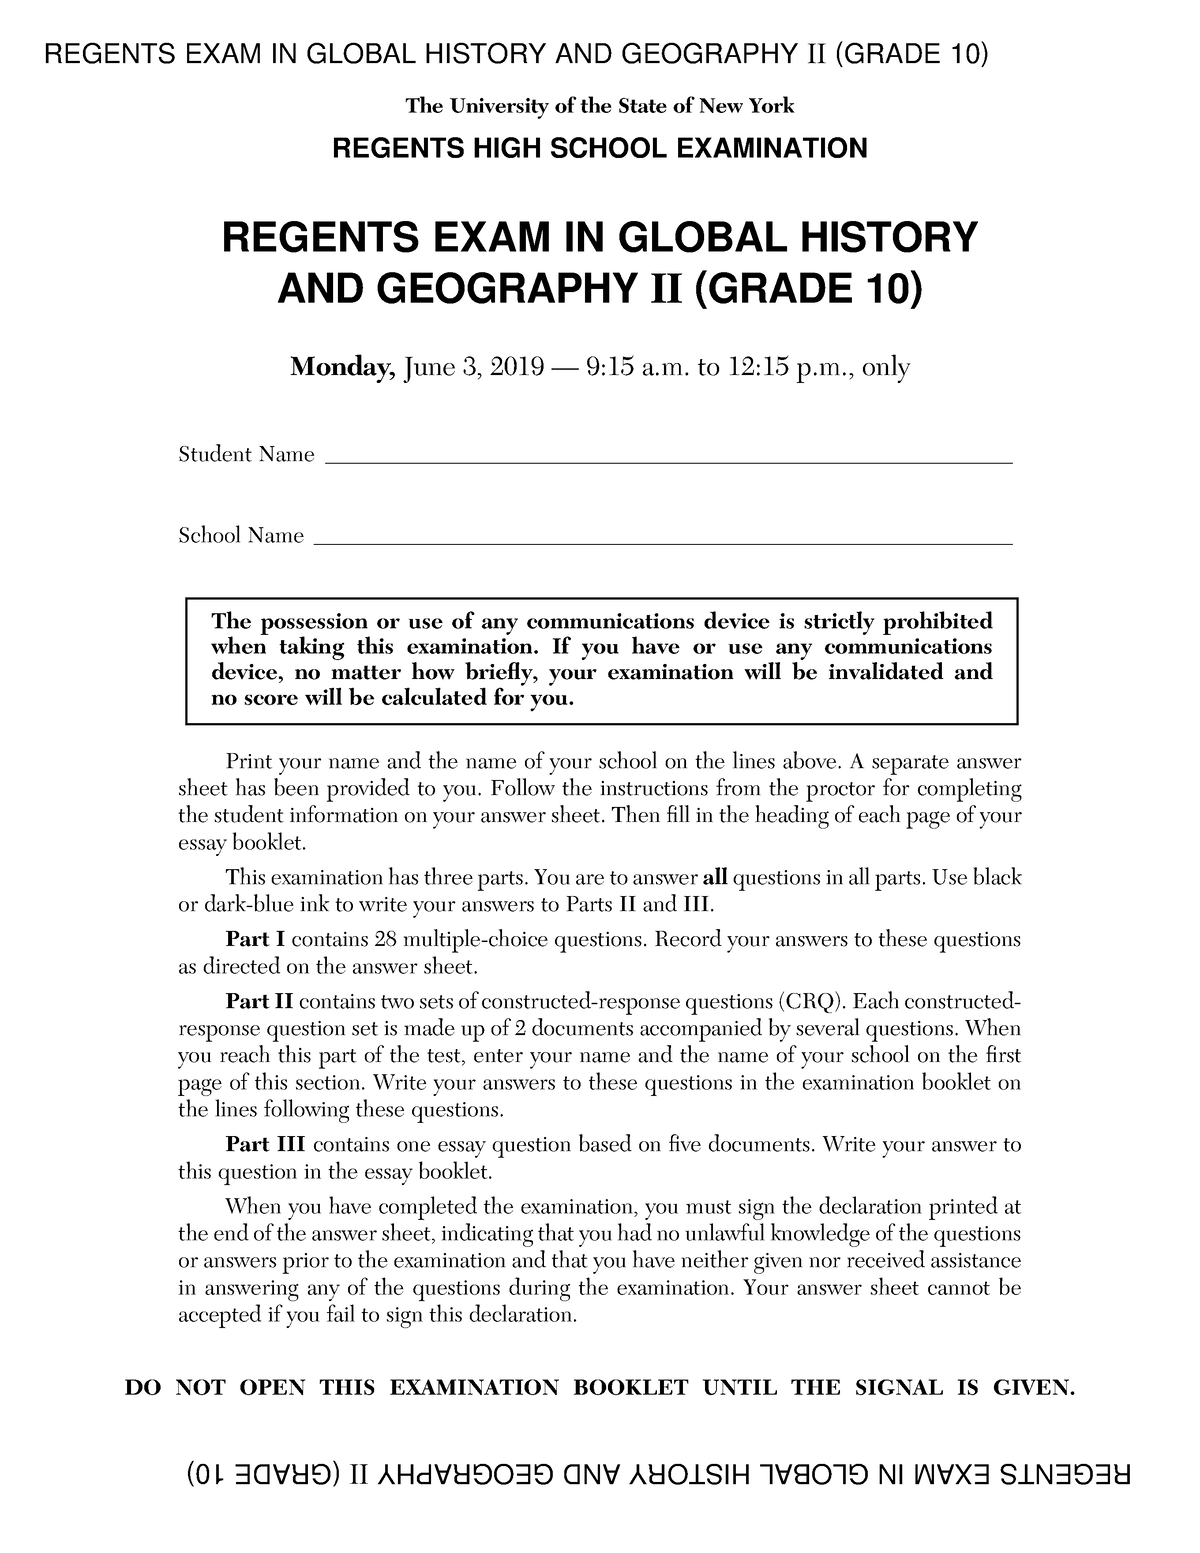 Regents exam fill in practice REGENTS EXAM IN GLOBAL HISTORY AND